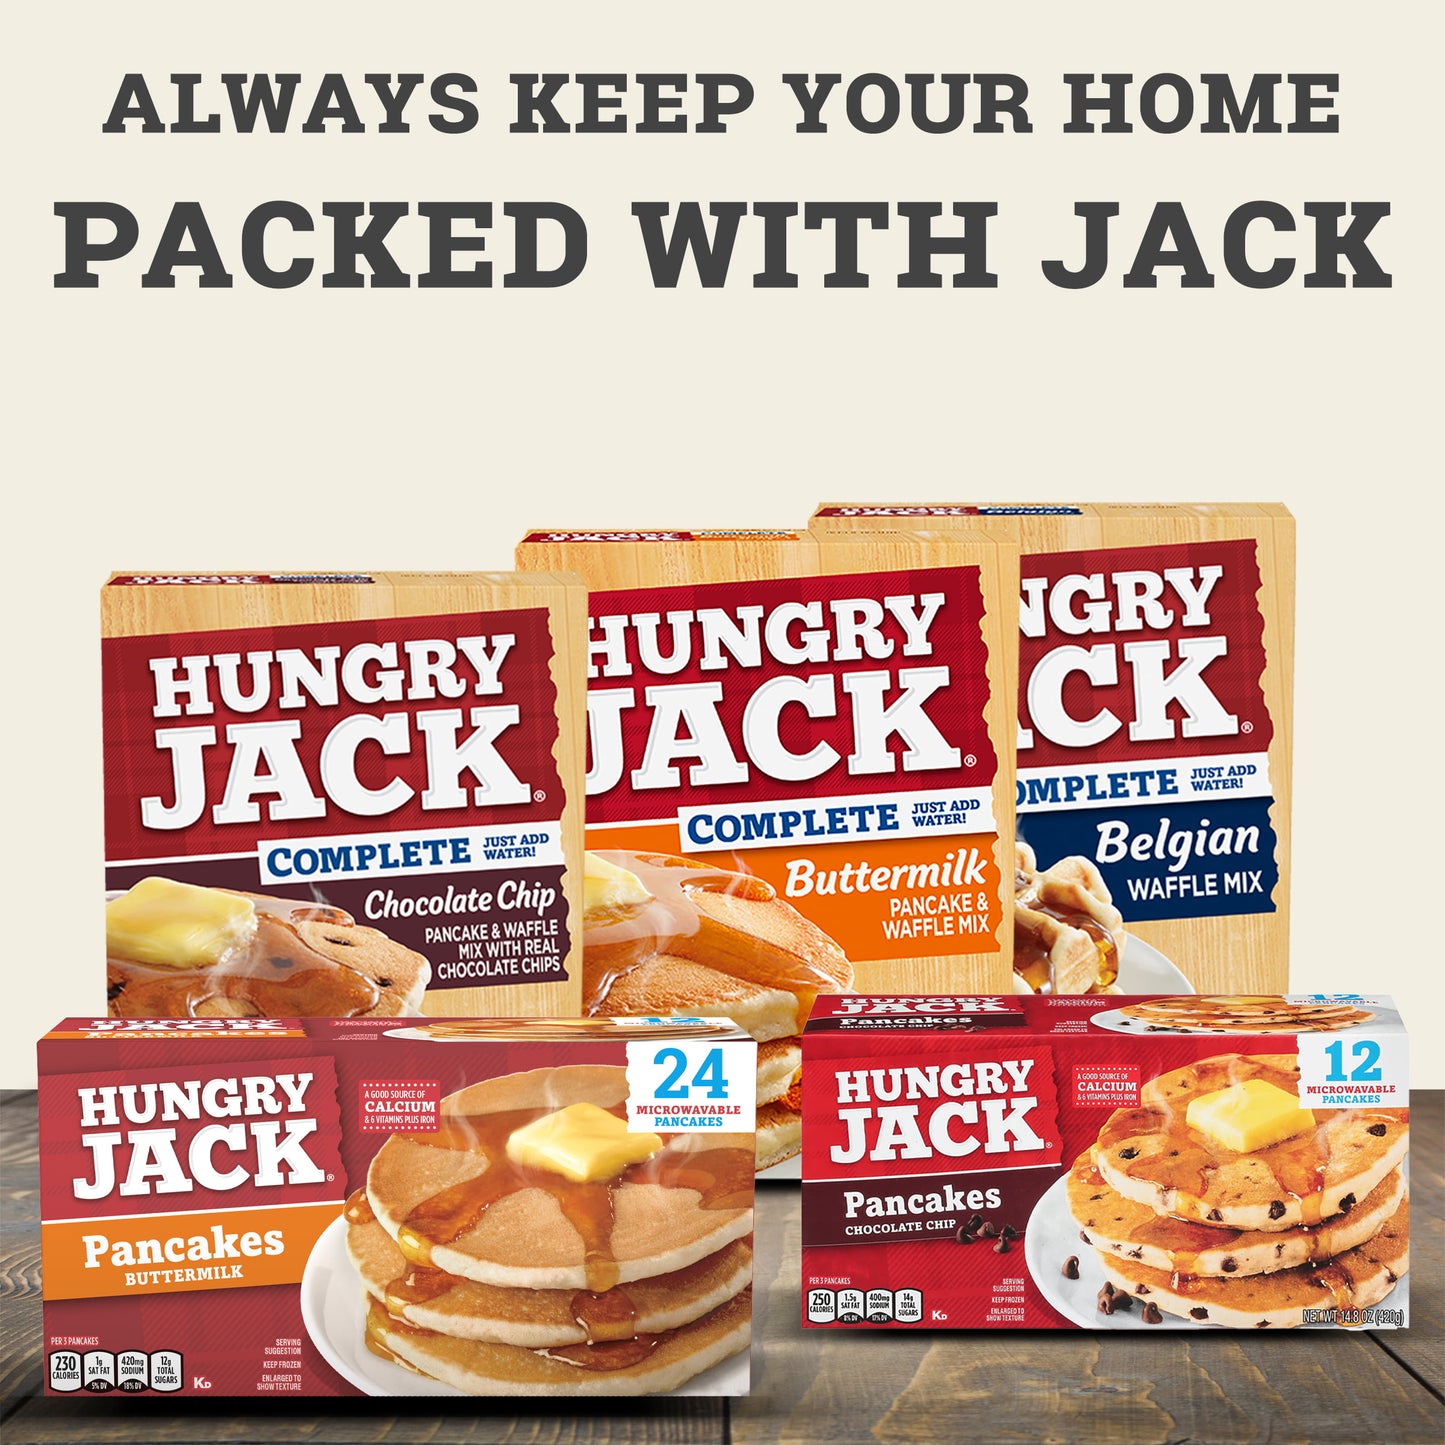 Hungry Jack Buttermilk Pancakes, 29.6 oz, 24 Count Box (Frozen)